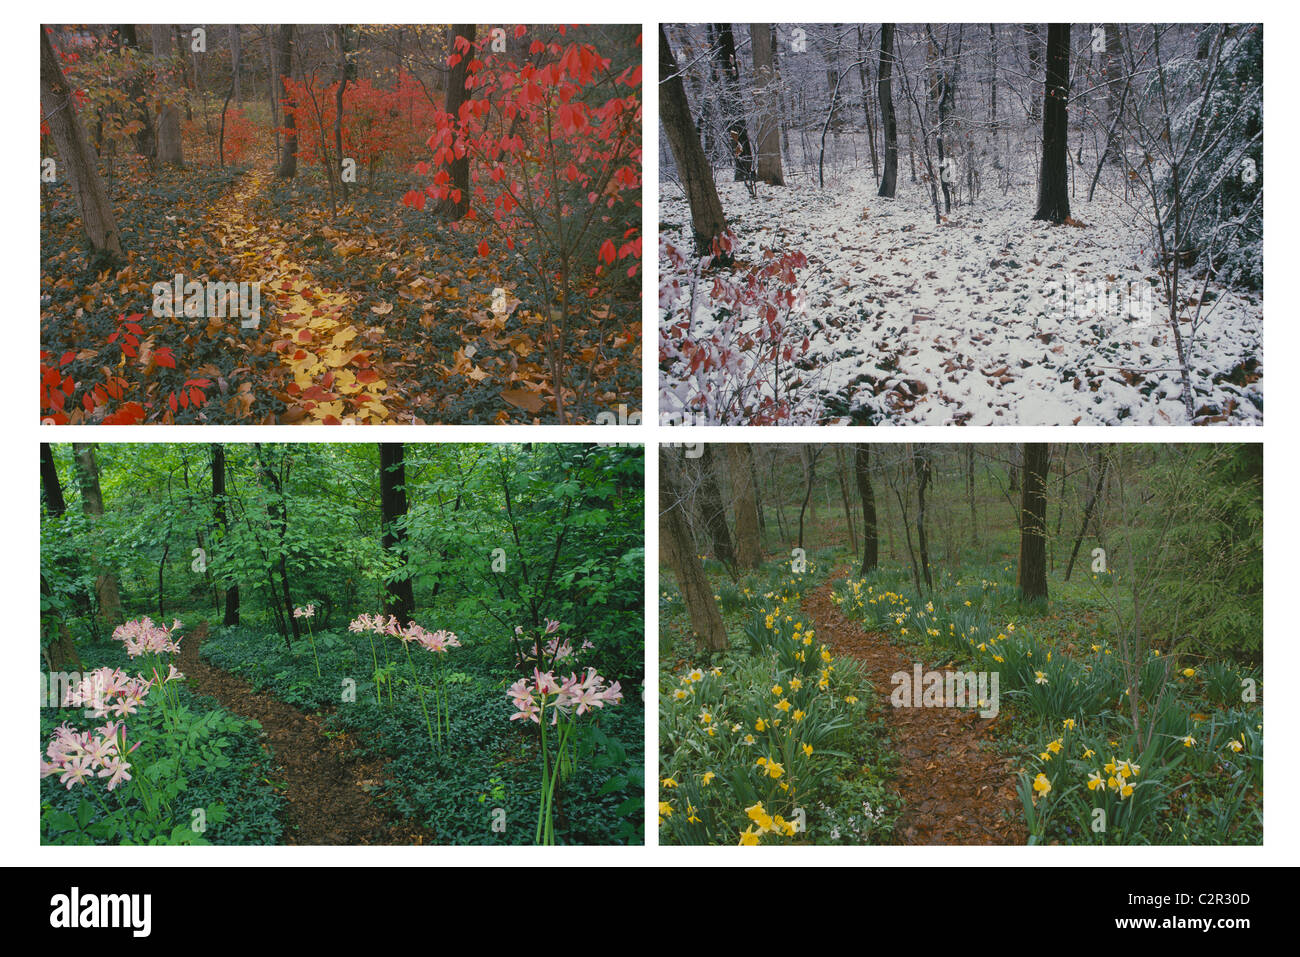 Quattro stagioni di un percorso alberato in cortile - Immagini disponibili singolarmente o come composite Foto Stock